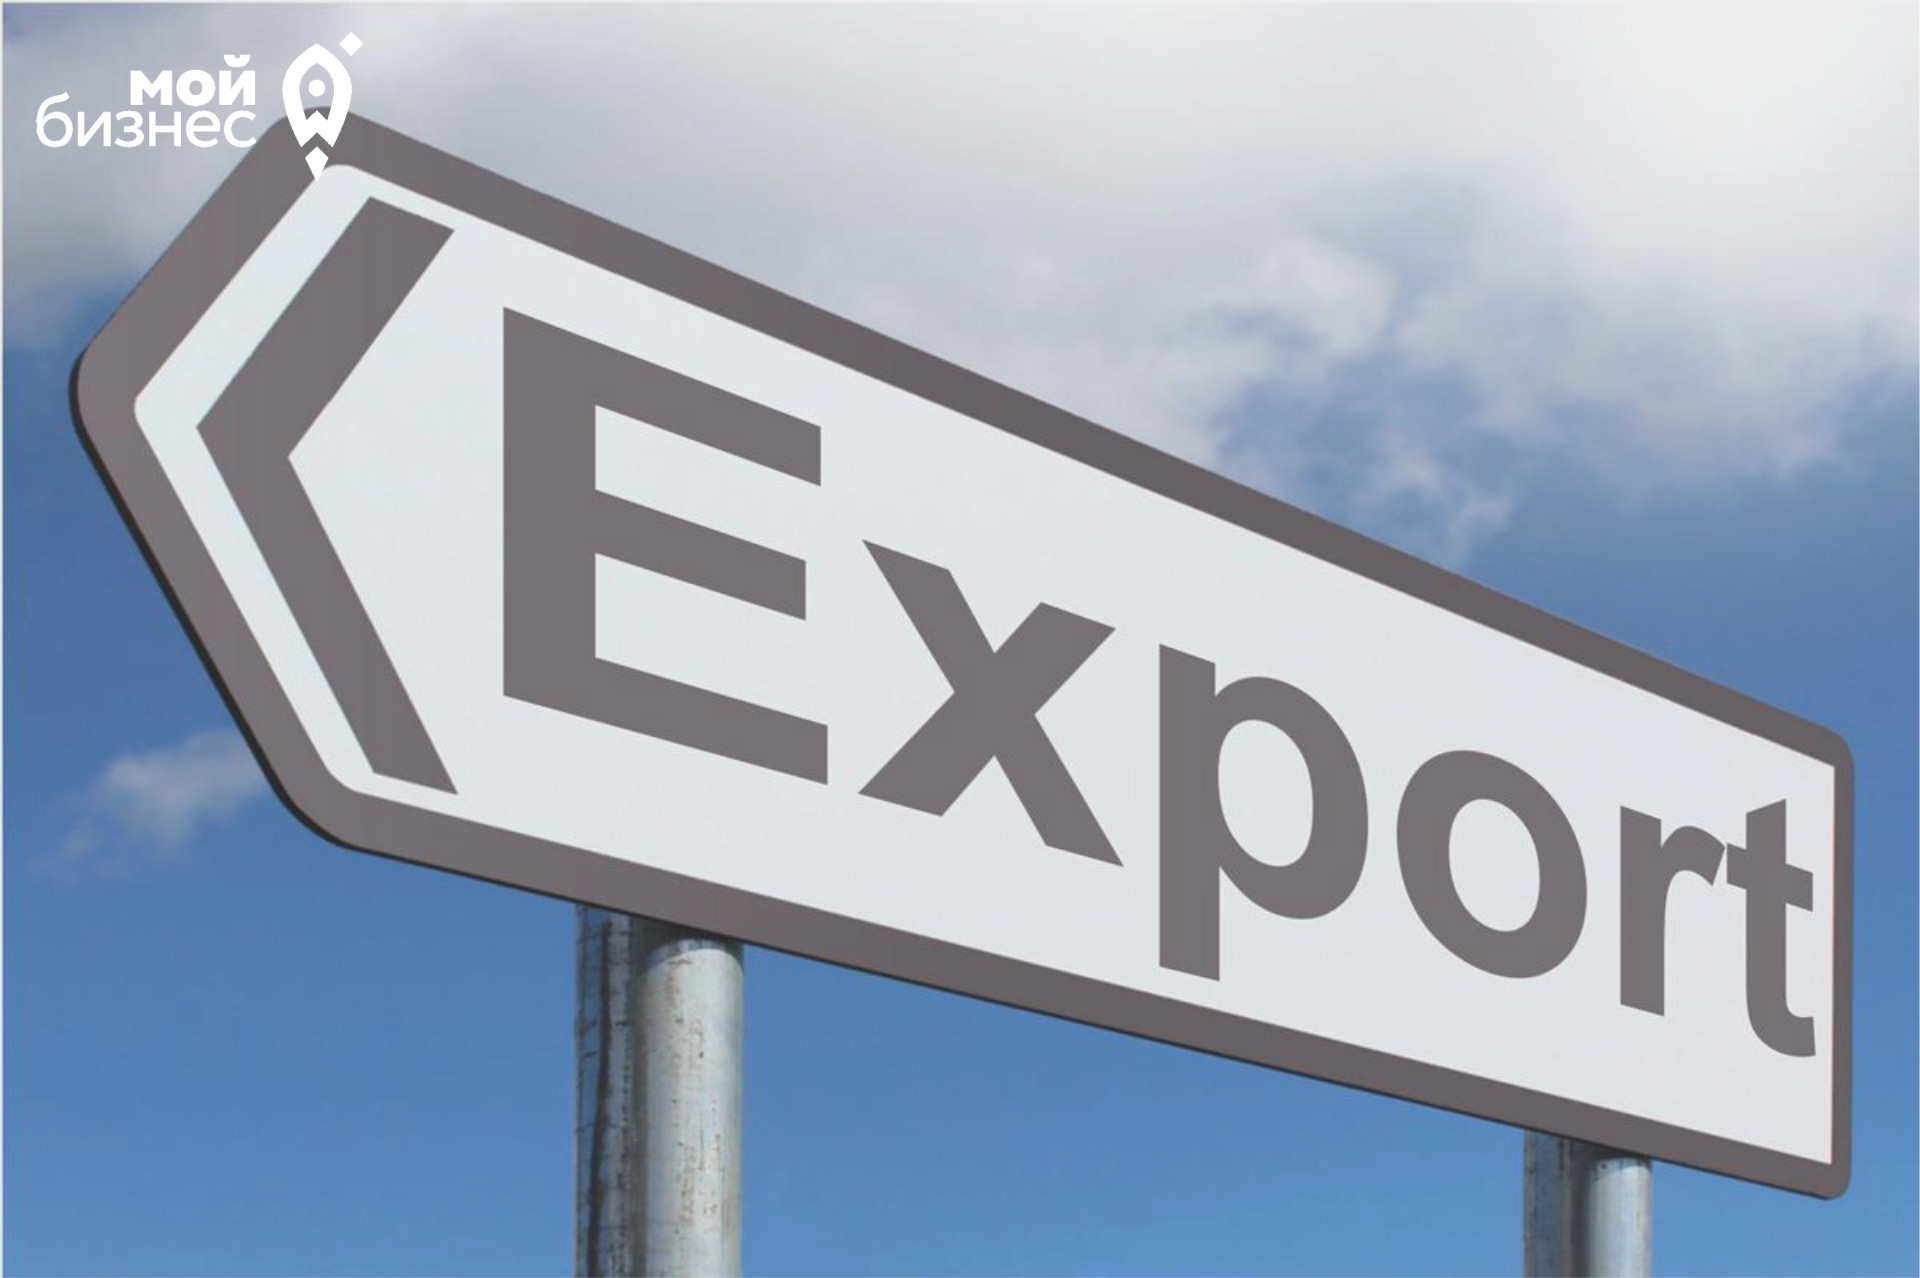 Приглашаем на обучающий экспортный семинар по теме «Основы экспортной деятельности»